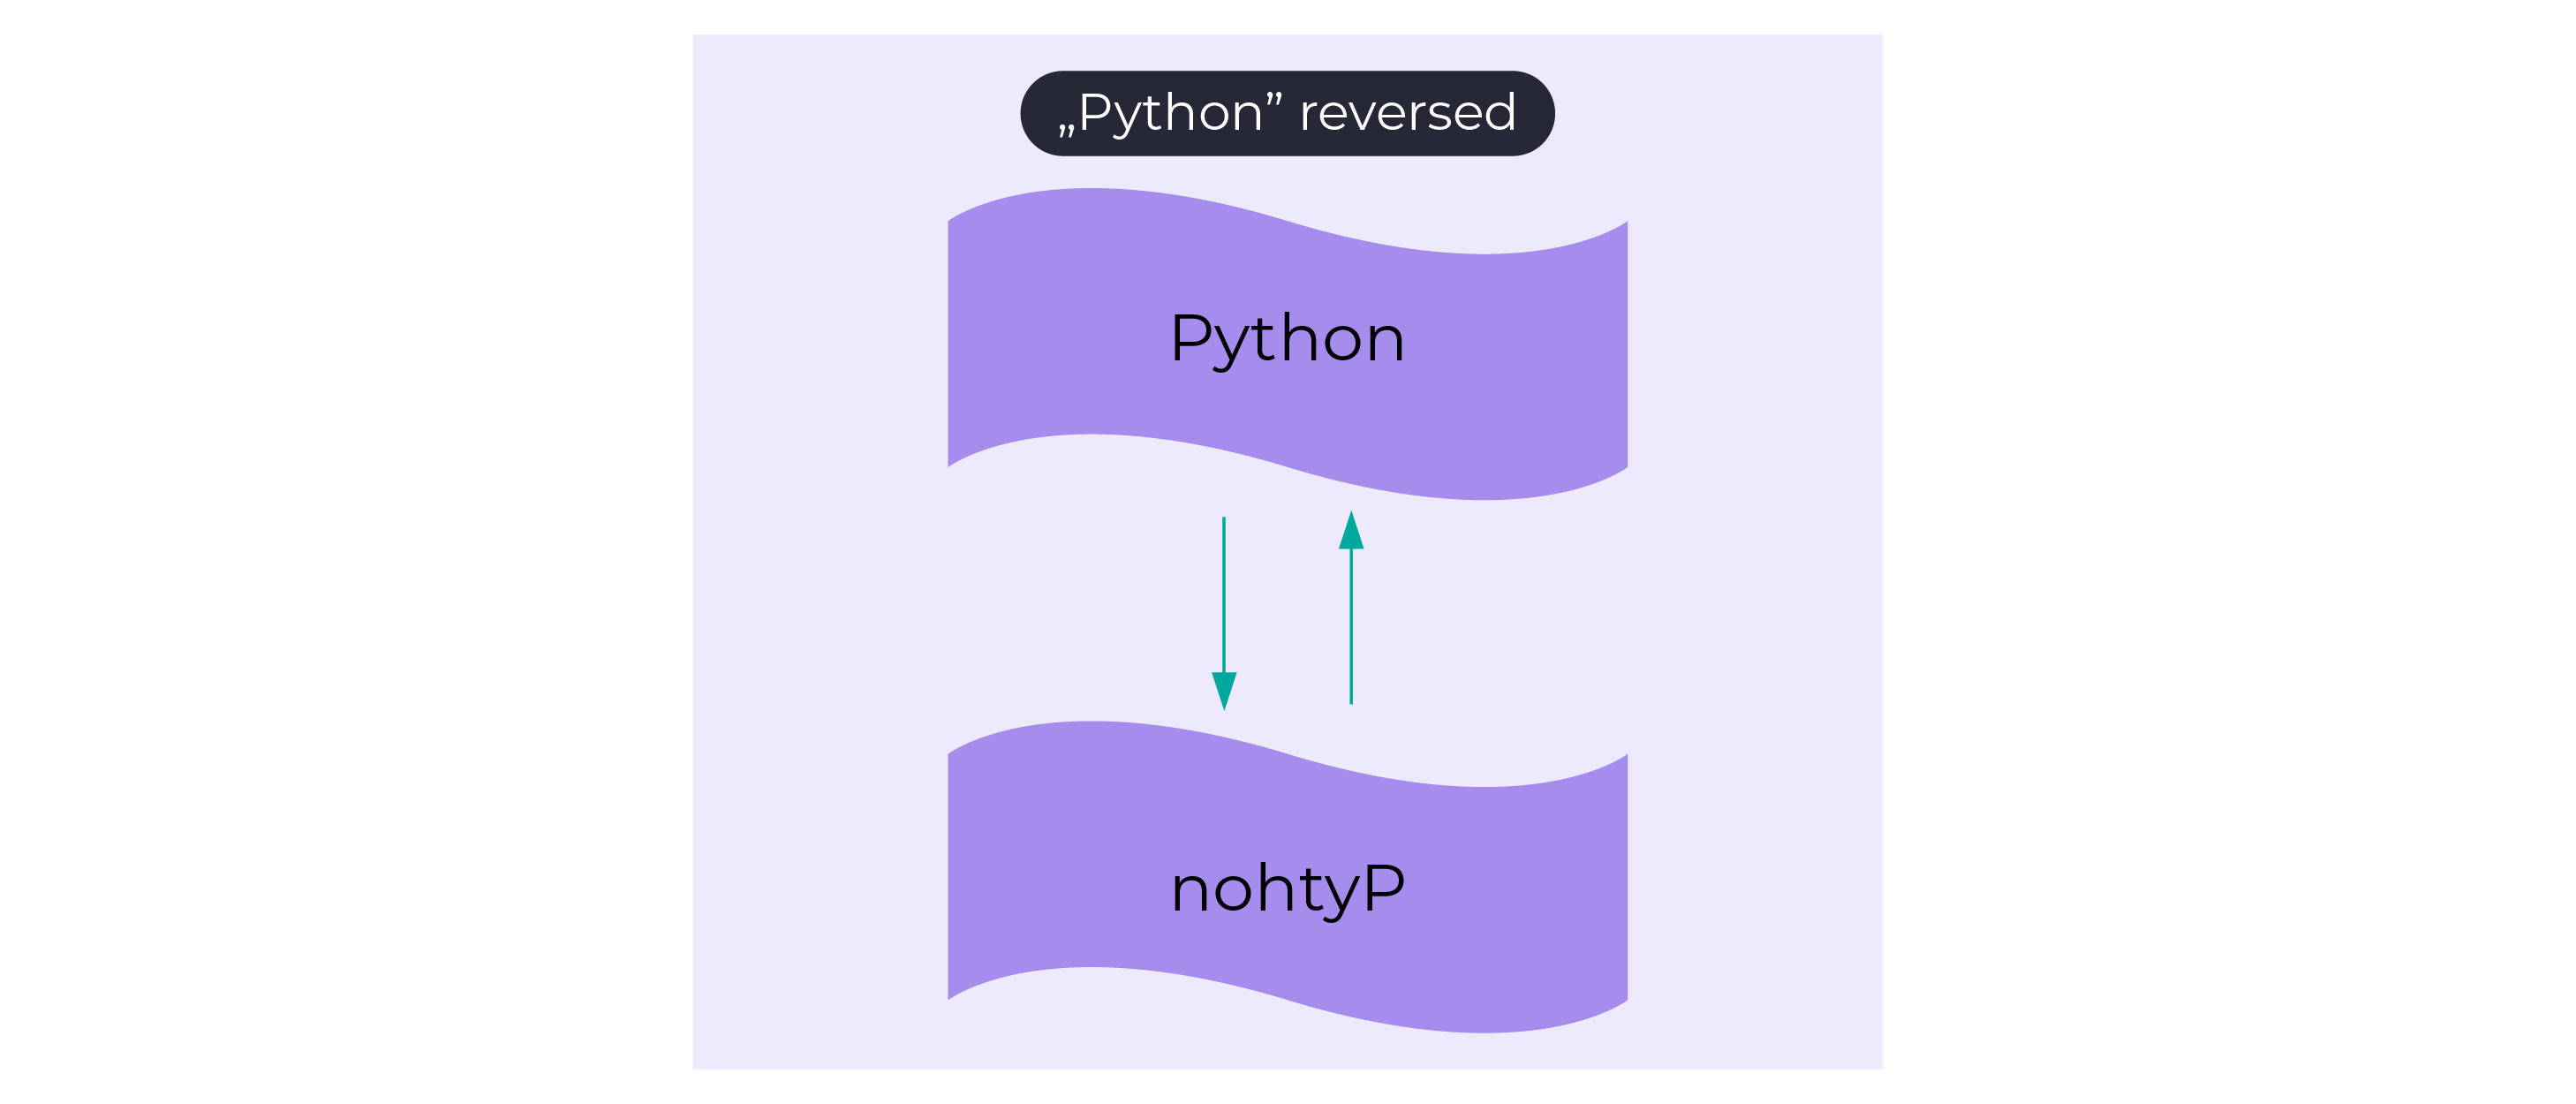 Python reversed